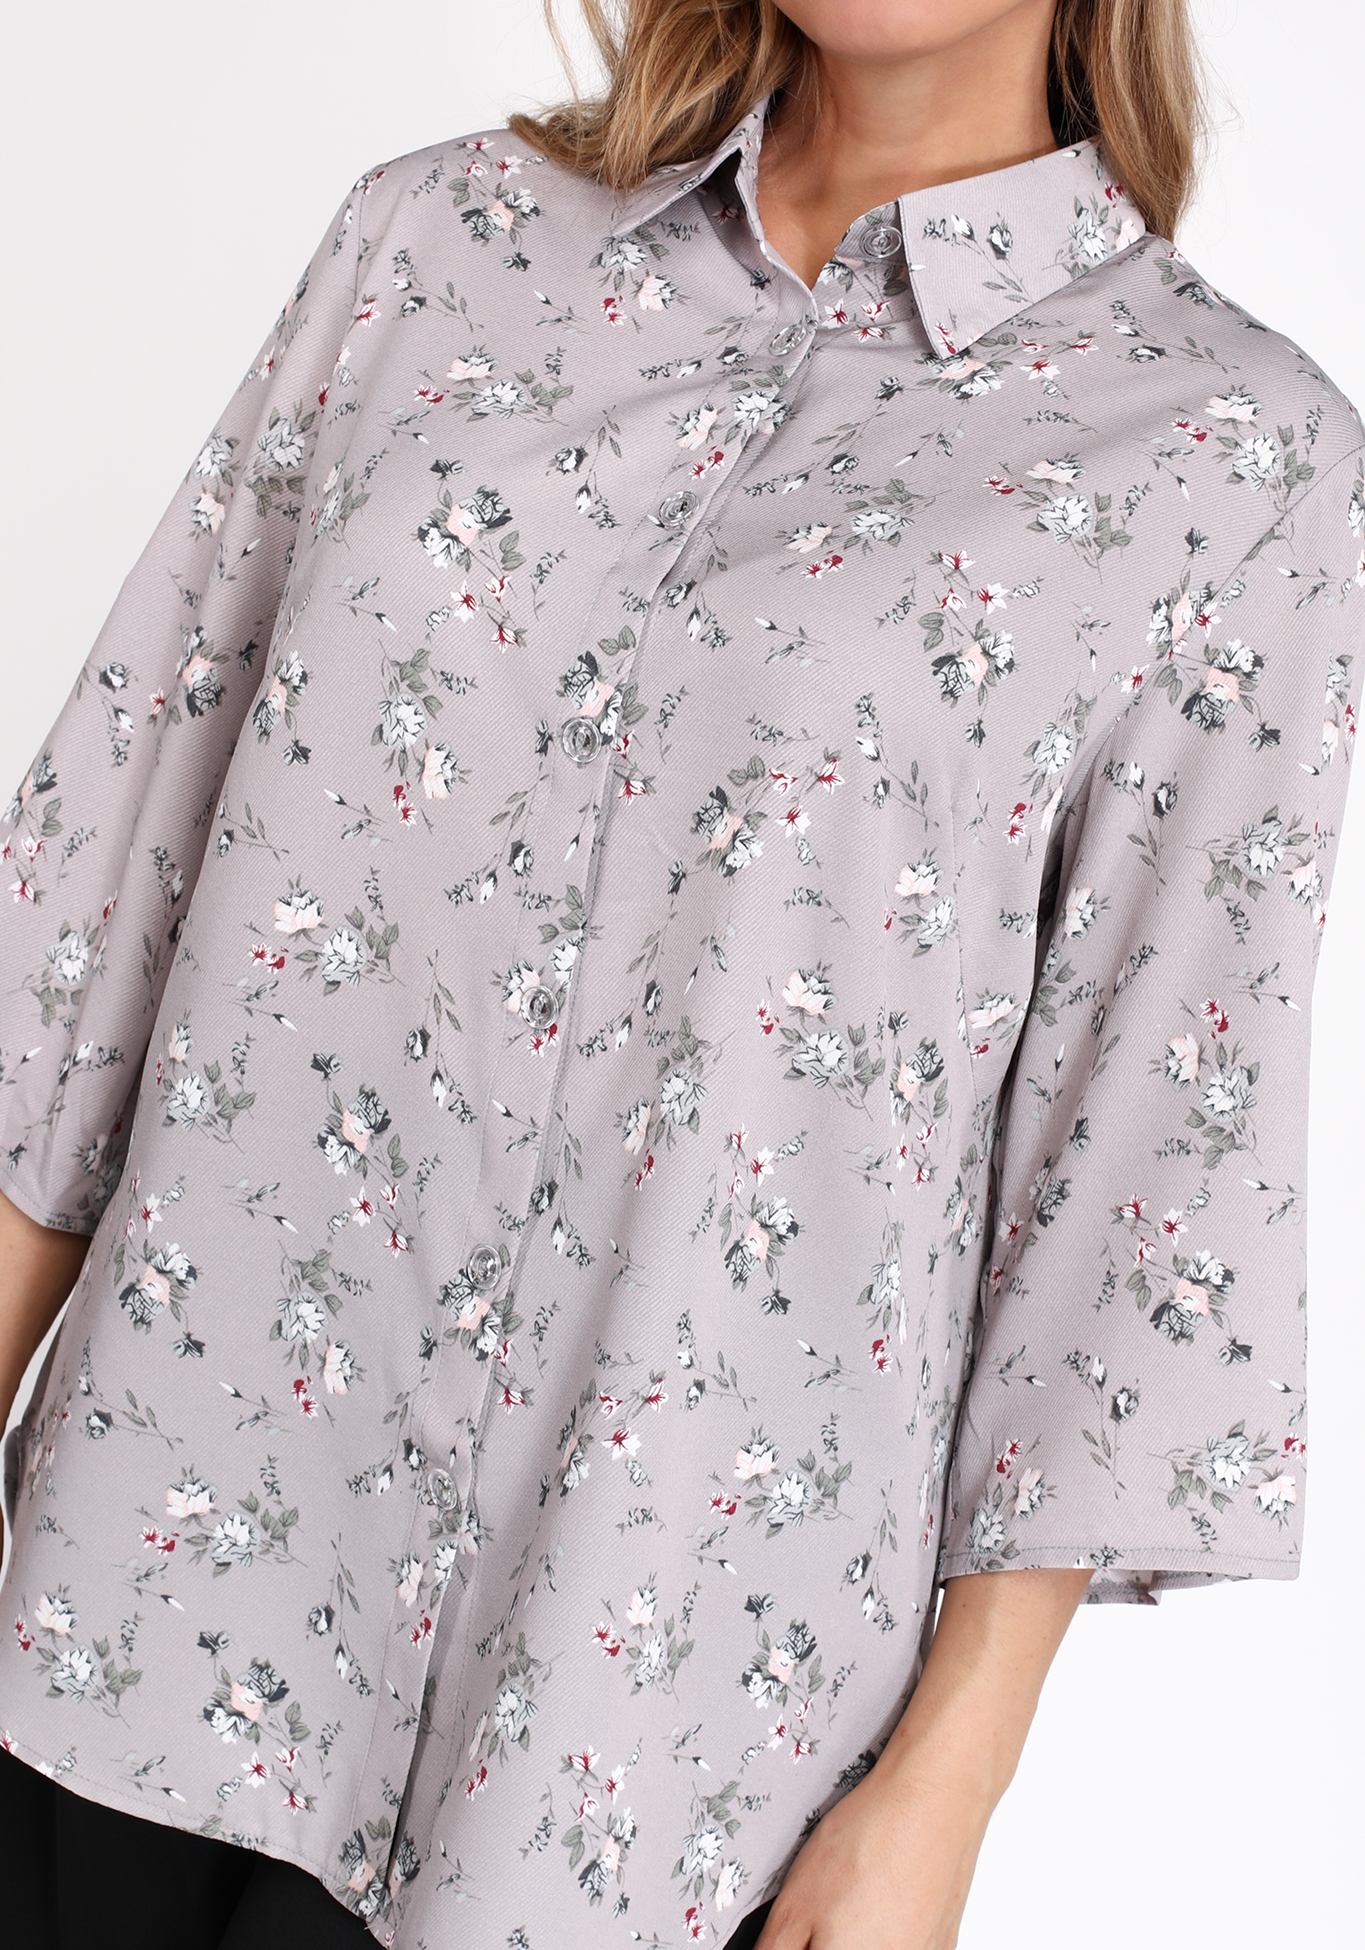 Рубашка на пуговицах с цветочным принтом Bianka Modeno, размер 50 свободная модель - фото 7